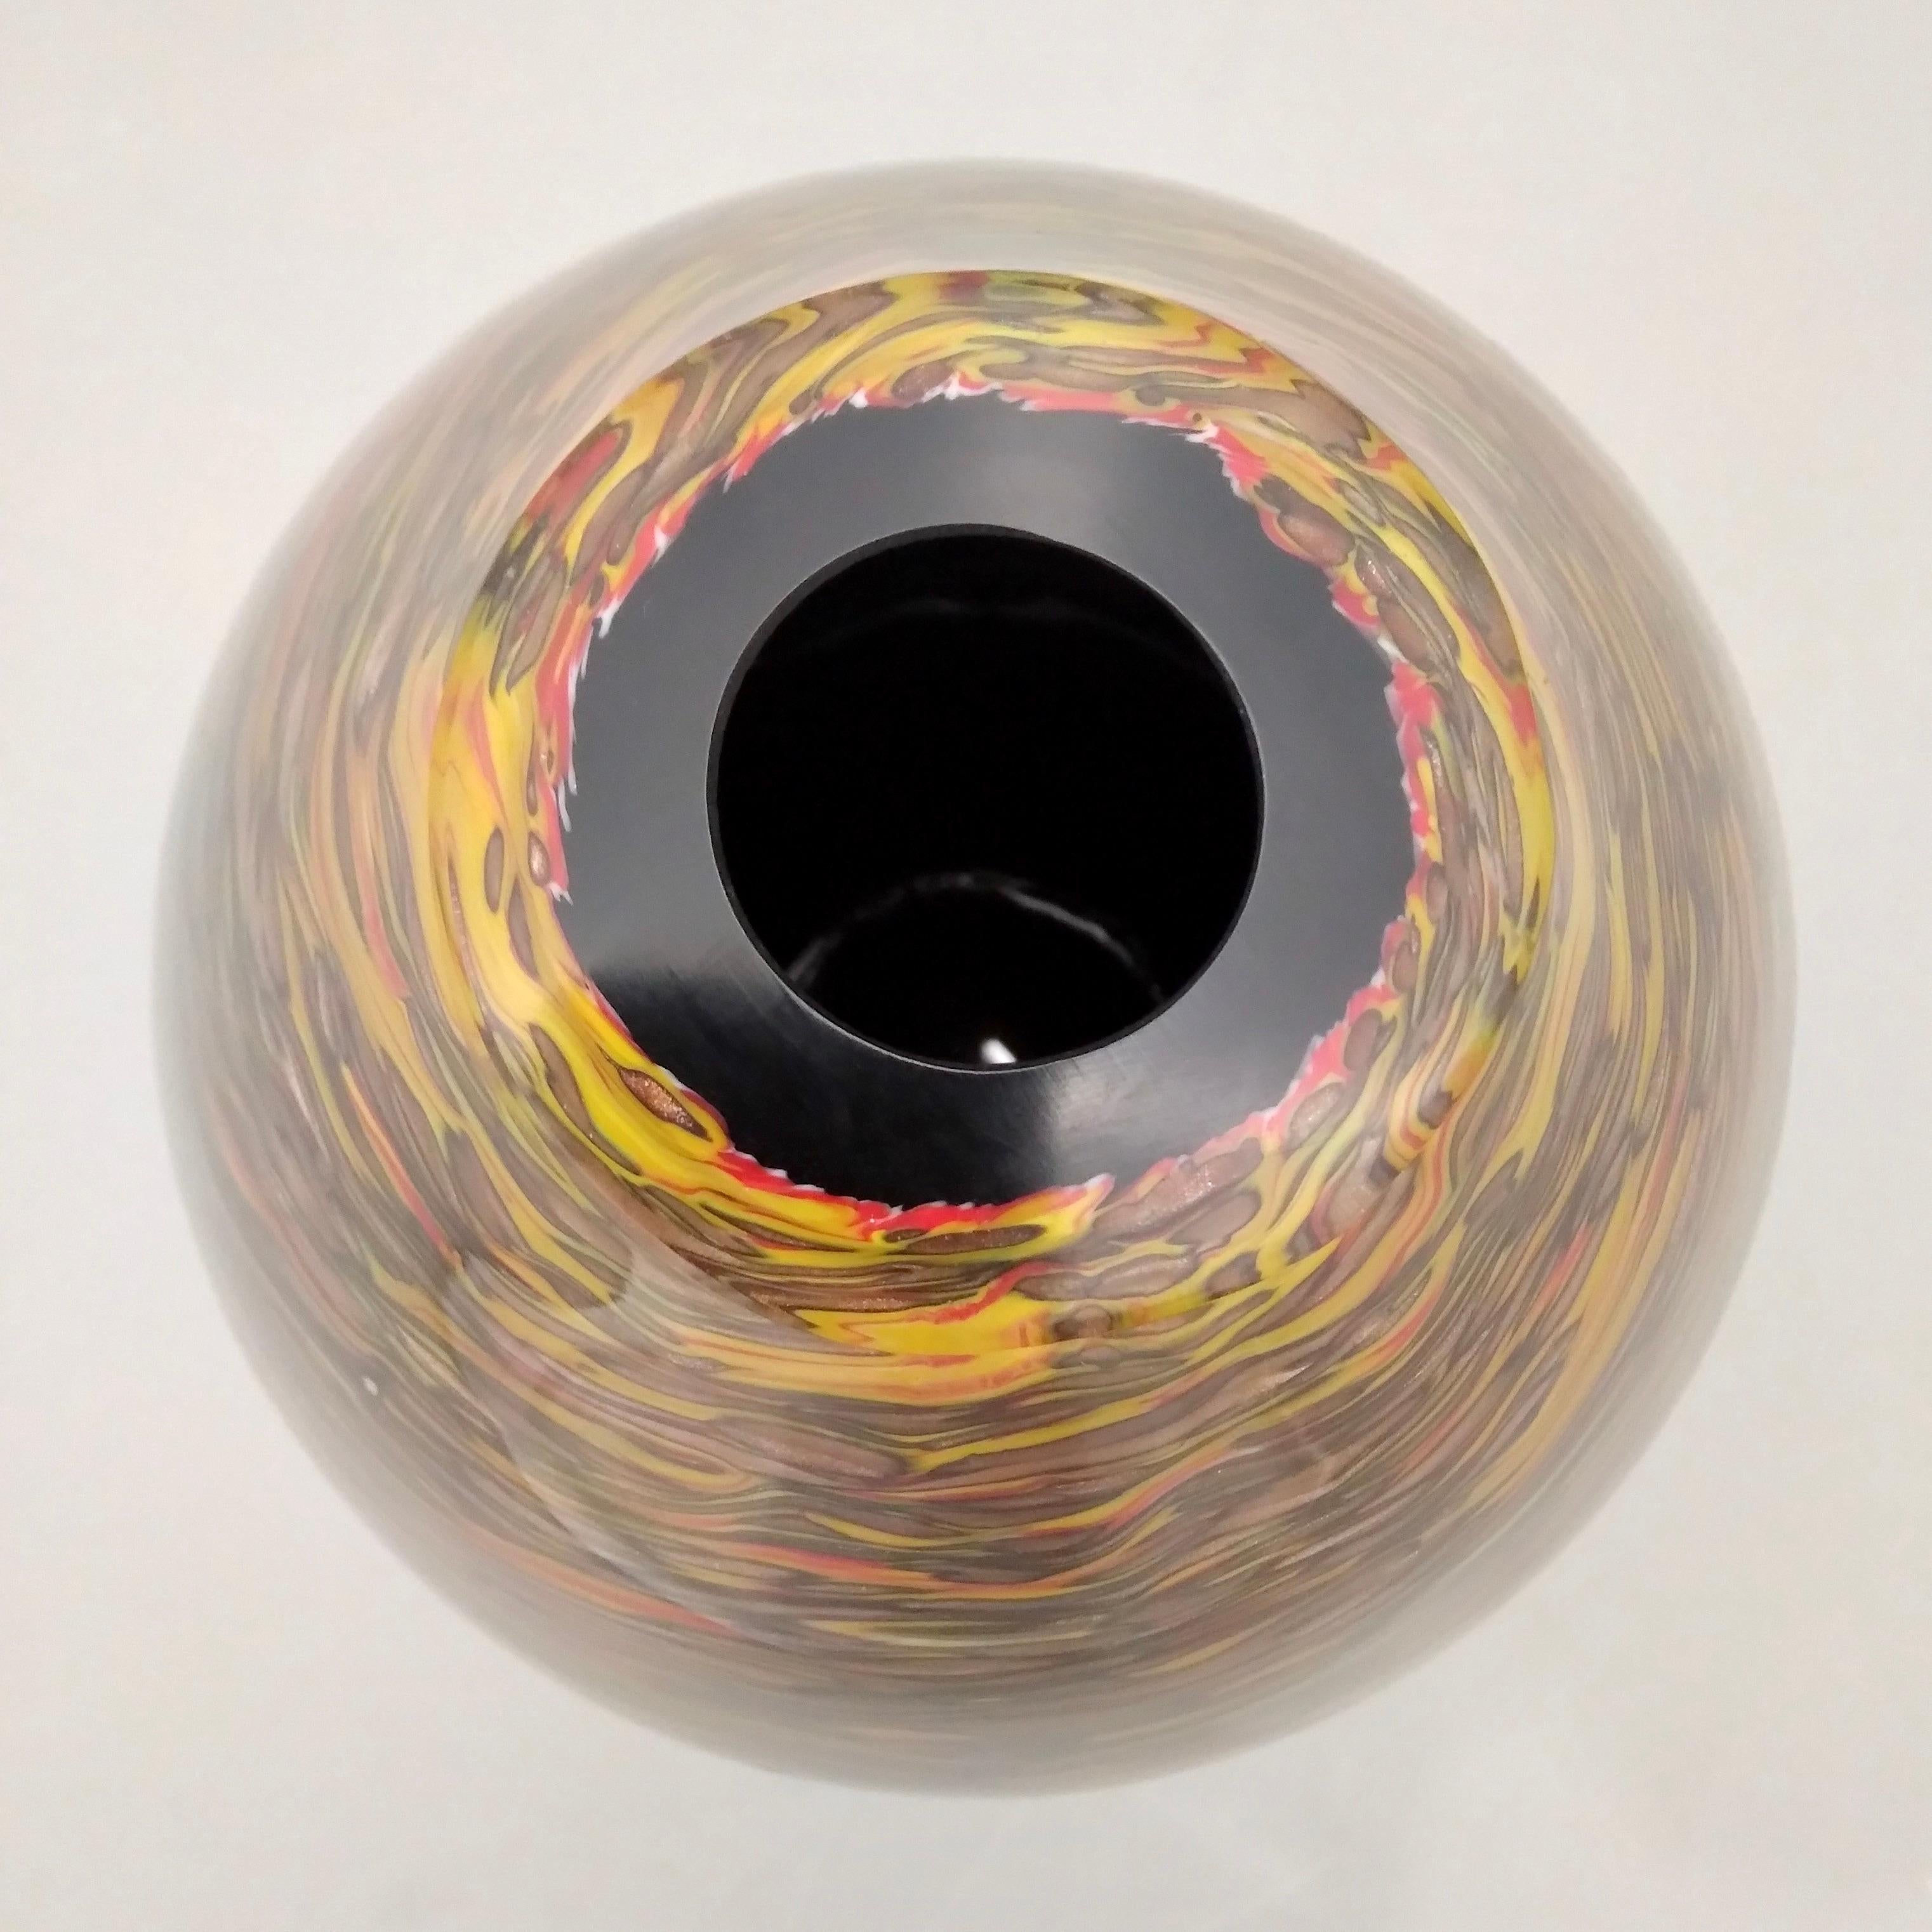 Eine auffällige eiförmige Vase, kostbare Kunstwerke aus mundgeblasenem, massivem, schwarzem Murano-Glas, gearbeitet wie ein modernes Gemälde mit einem raffinierten, organischen, feurigen Dekor aus überlagertem, länglichem Muranoglas in braunen,